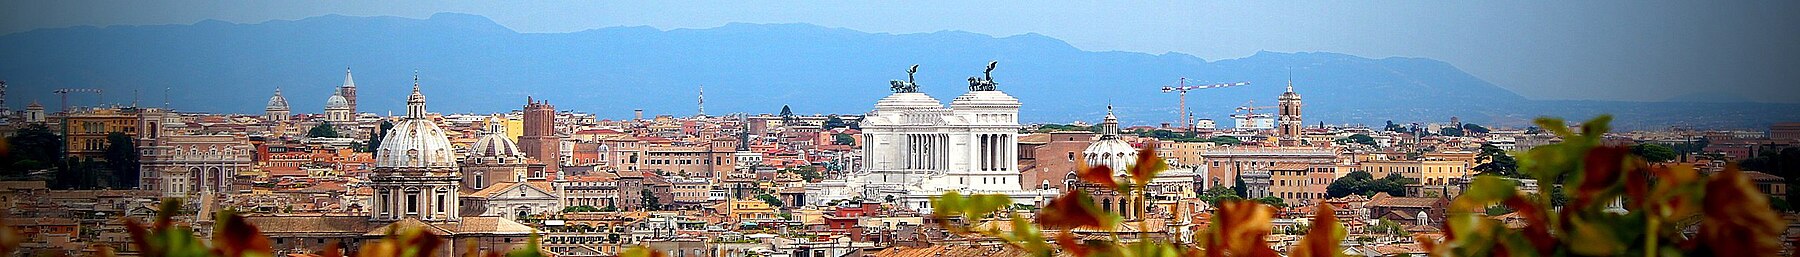 Rome banner panorama.jpg